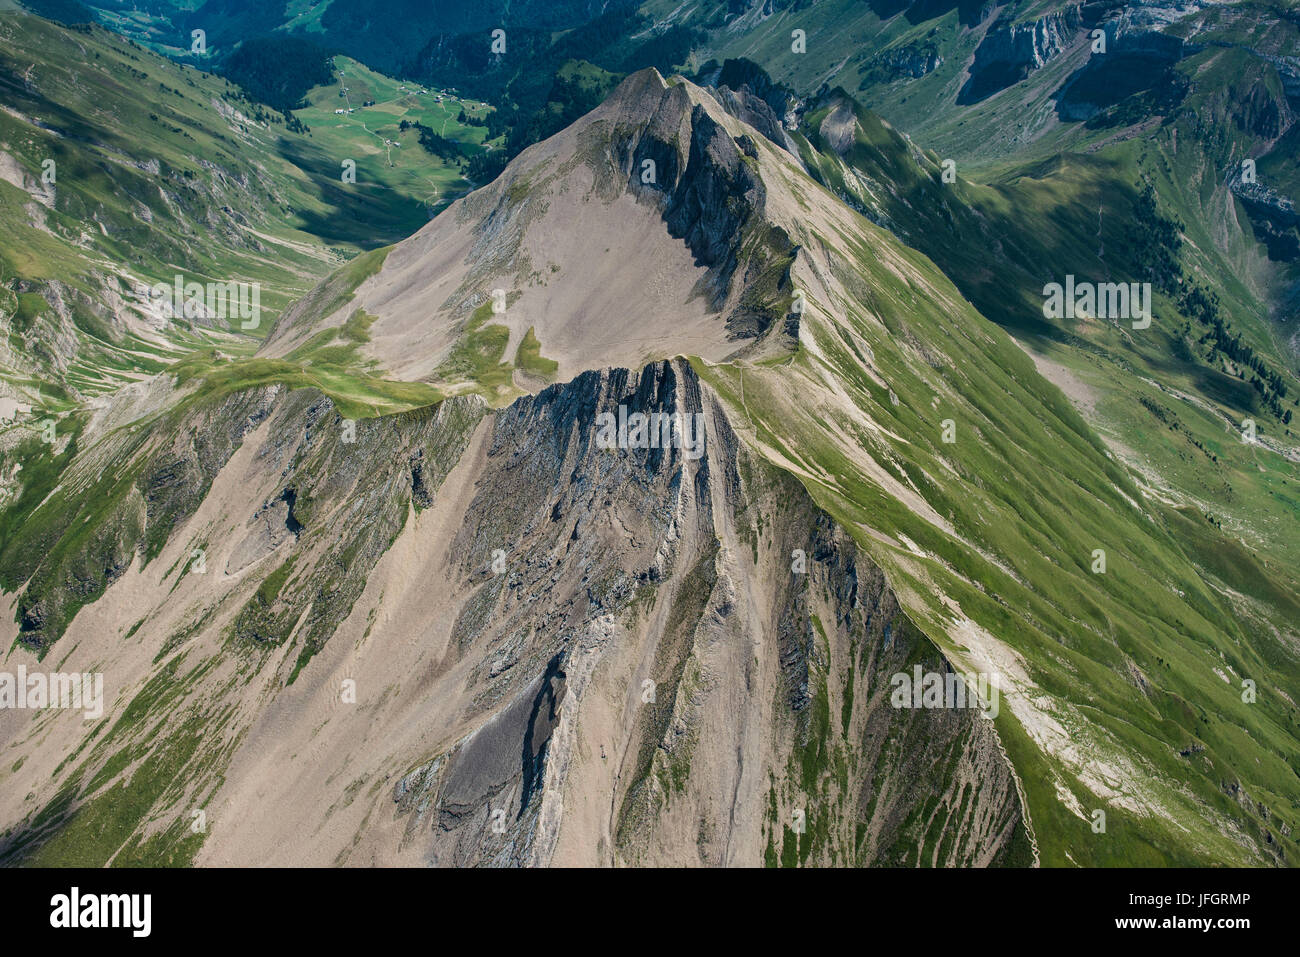 Haldigrat, mountain massif, aerial picture, travelling area, Wolfenschiessen, Engelbergertal, Zentralschweiz, region of Vierwaldstättersee, Switzerland Stock Photo